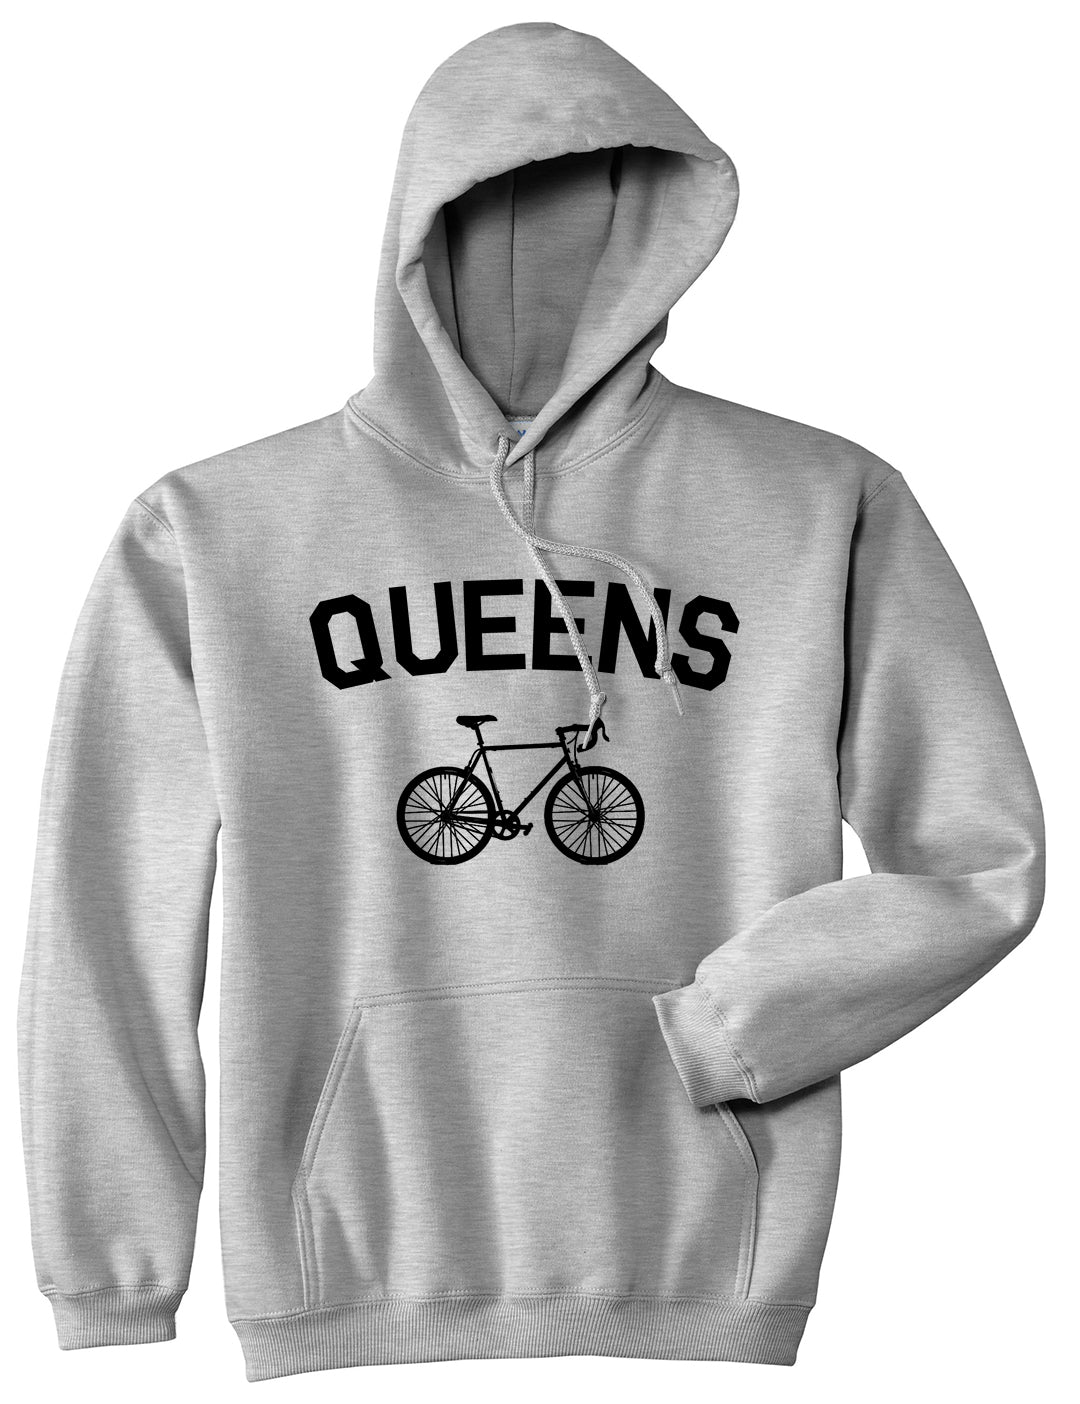 Queens New York Vintage Bike Cycling Mens Pullover Hoodie Grey